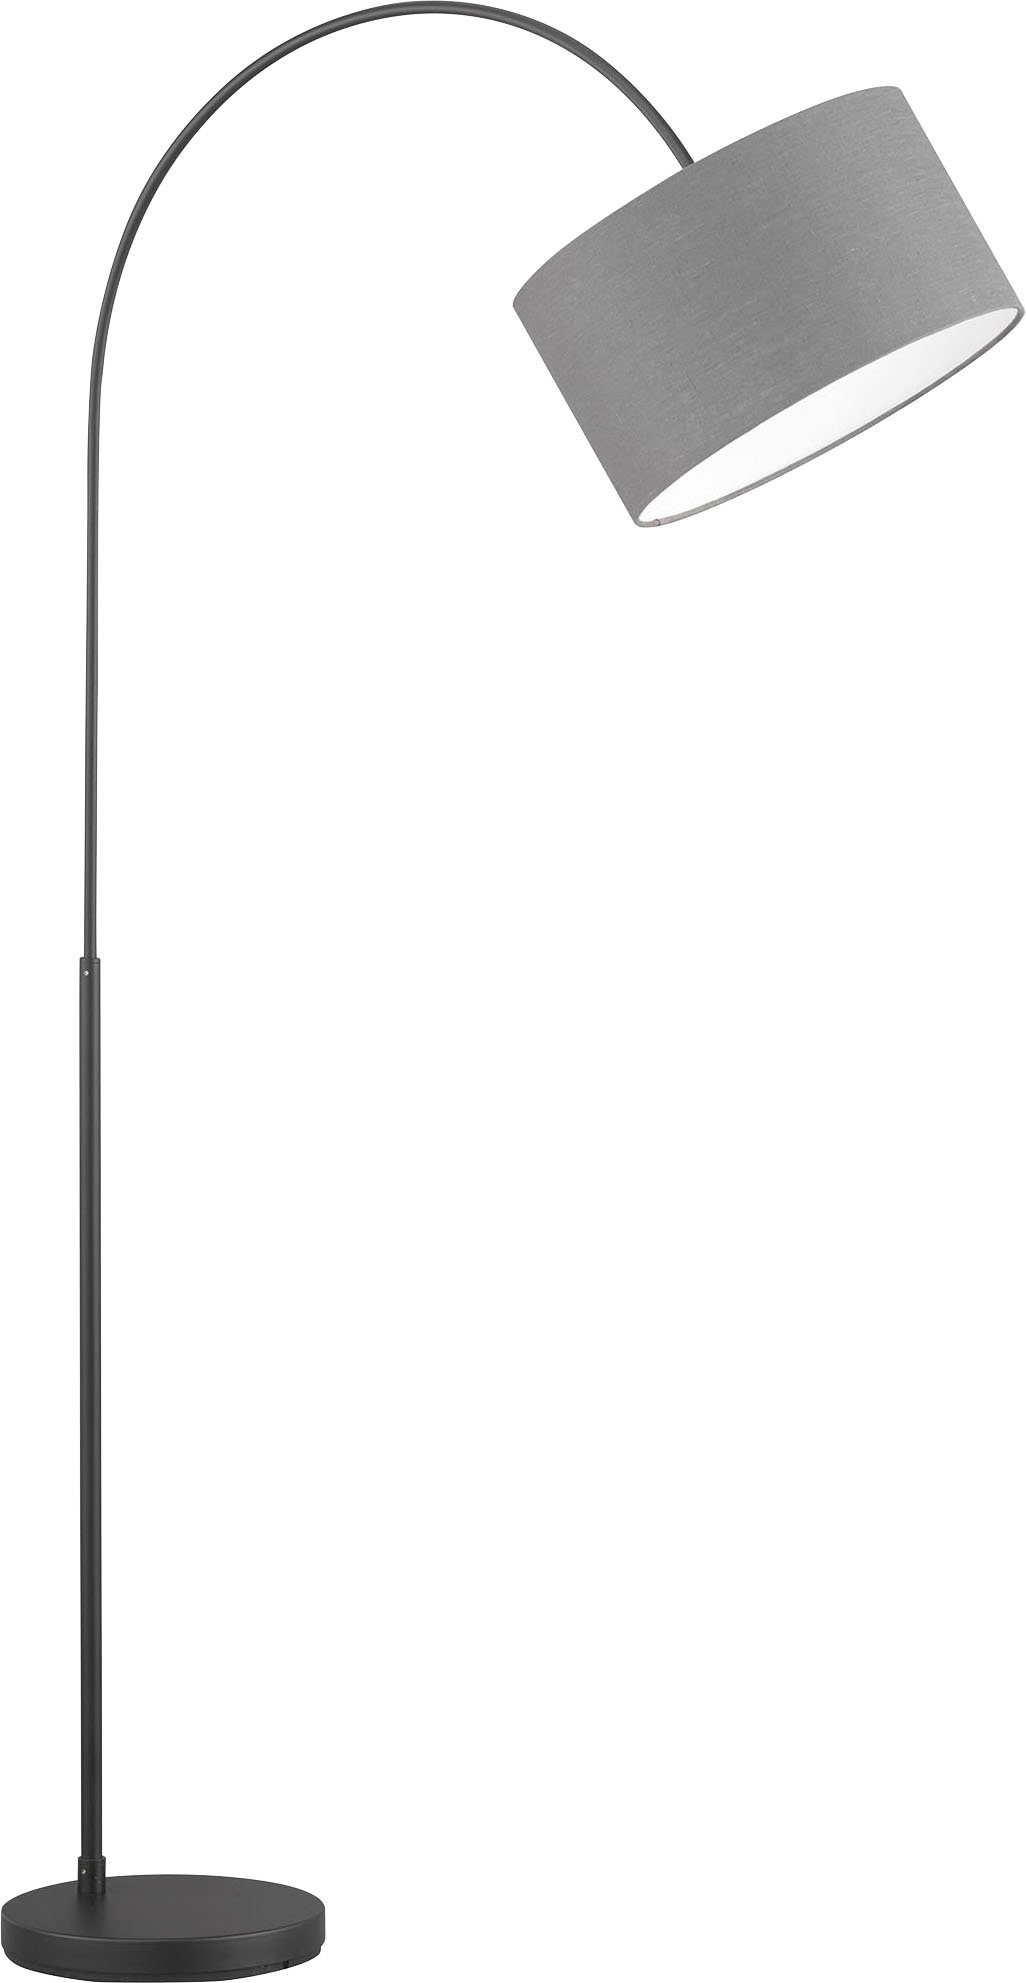 FISCHER & HONSEL Stehlampe Arc, Ein-/Ausschalter, ohne Leuchtmittel